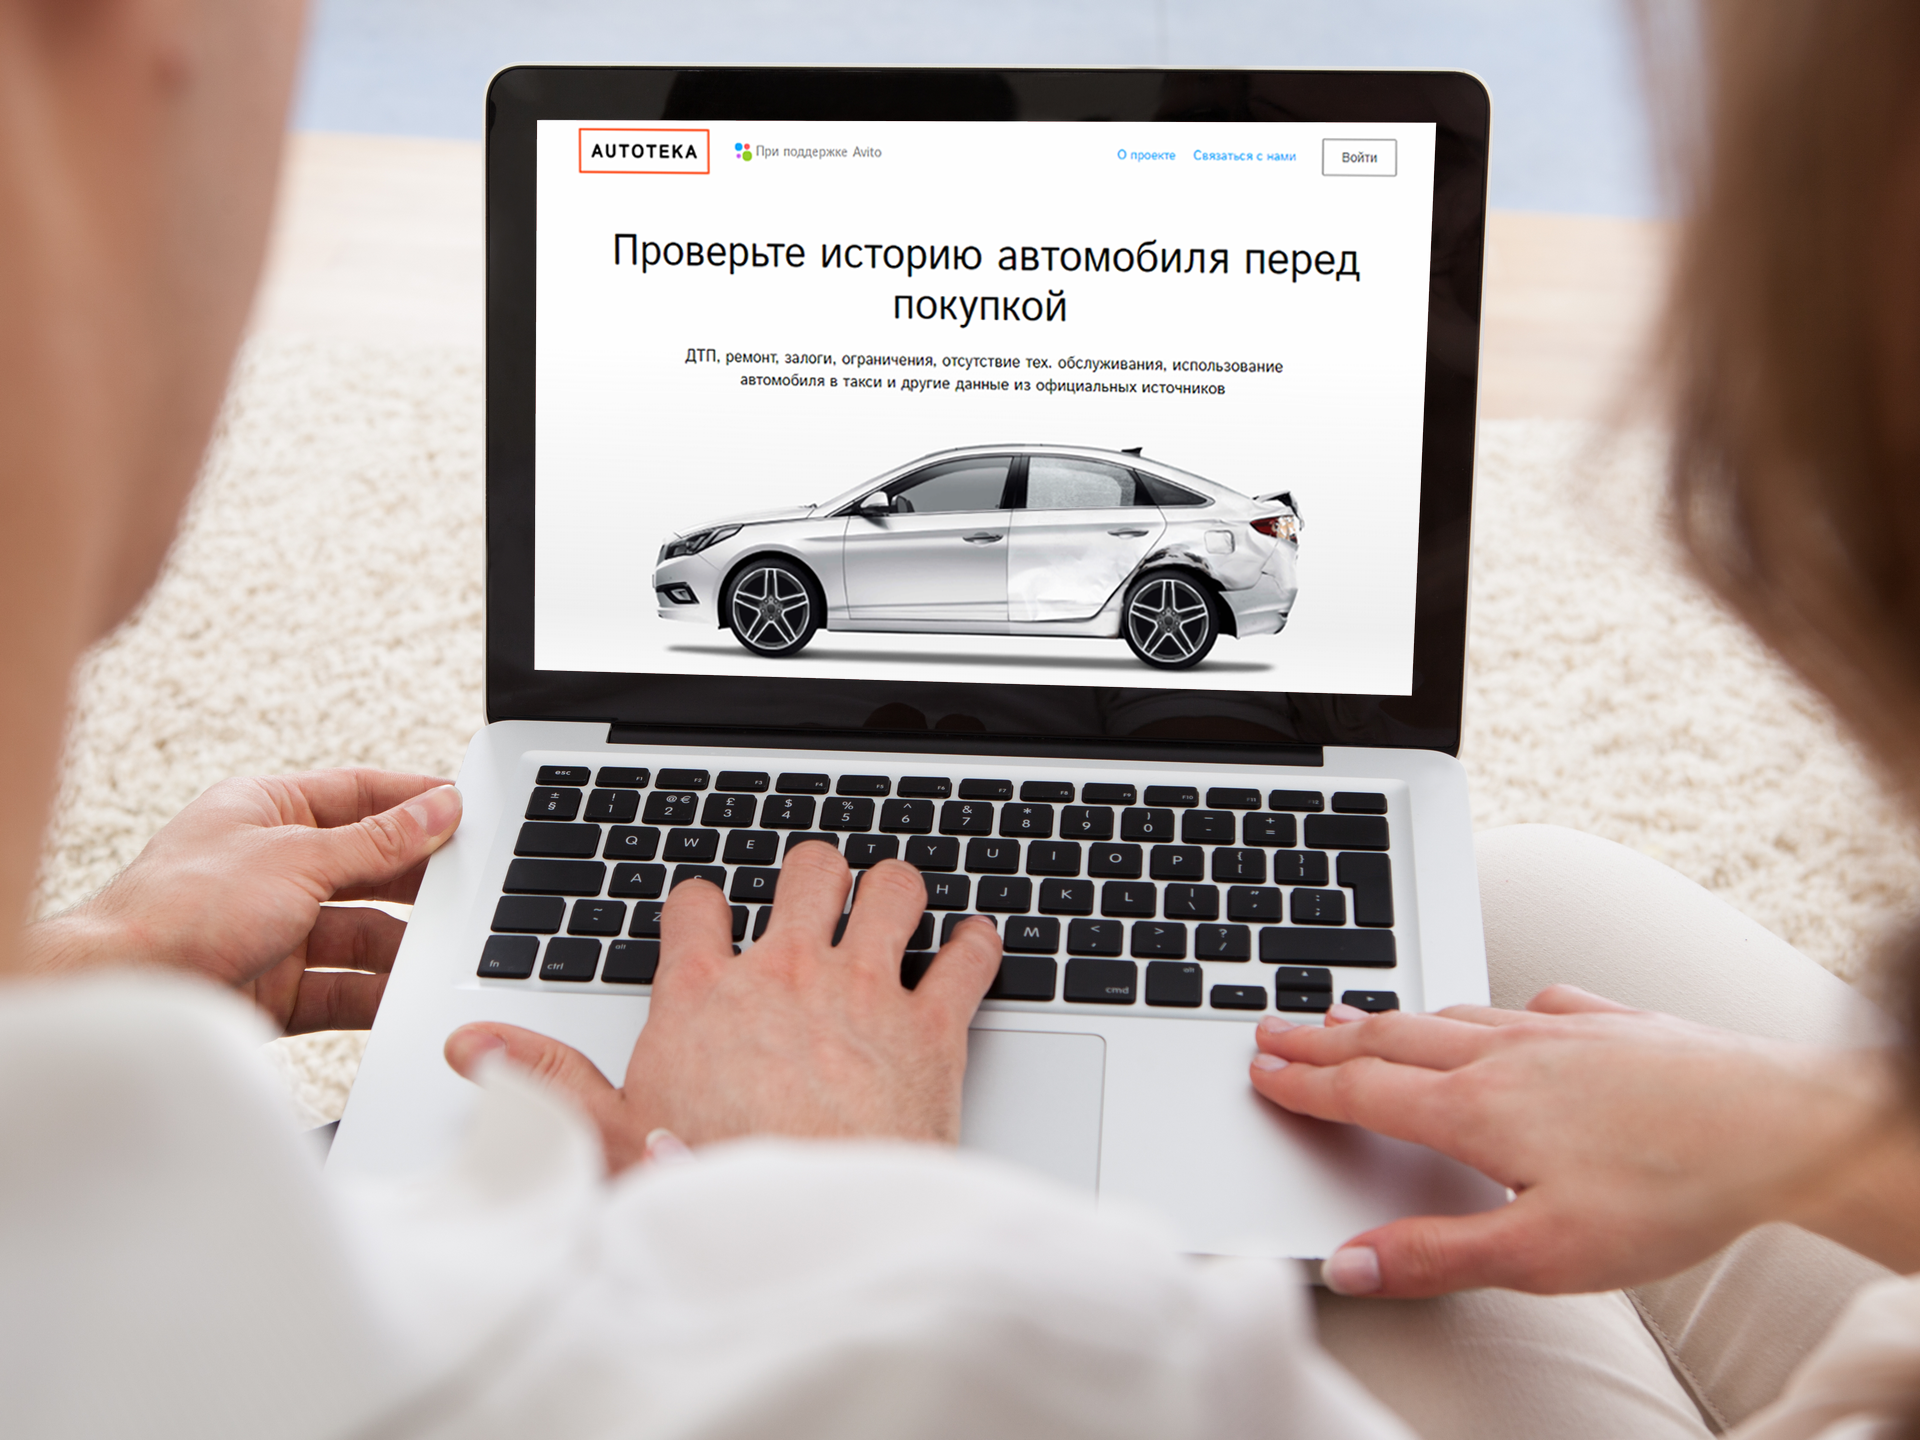 Покупка интернет номера. Проверка истории автомобиля. Выбор автомобиля. Реклама машин в интернете. Реклама автомобилей в интернете.